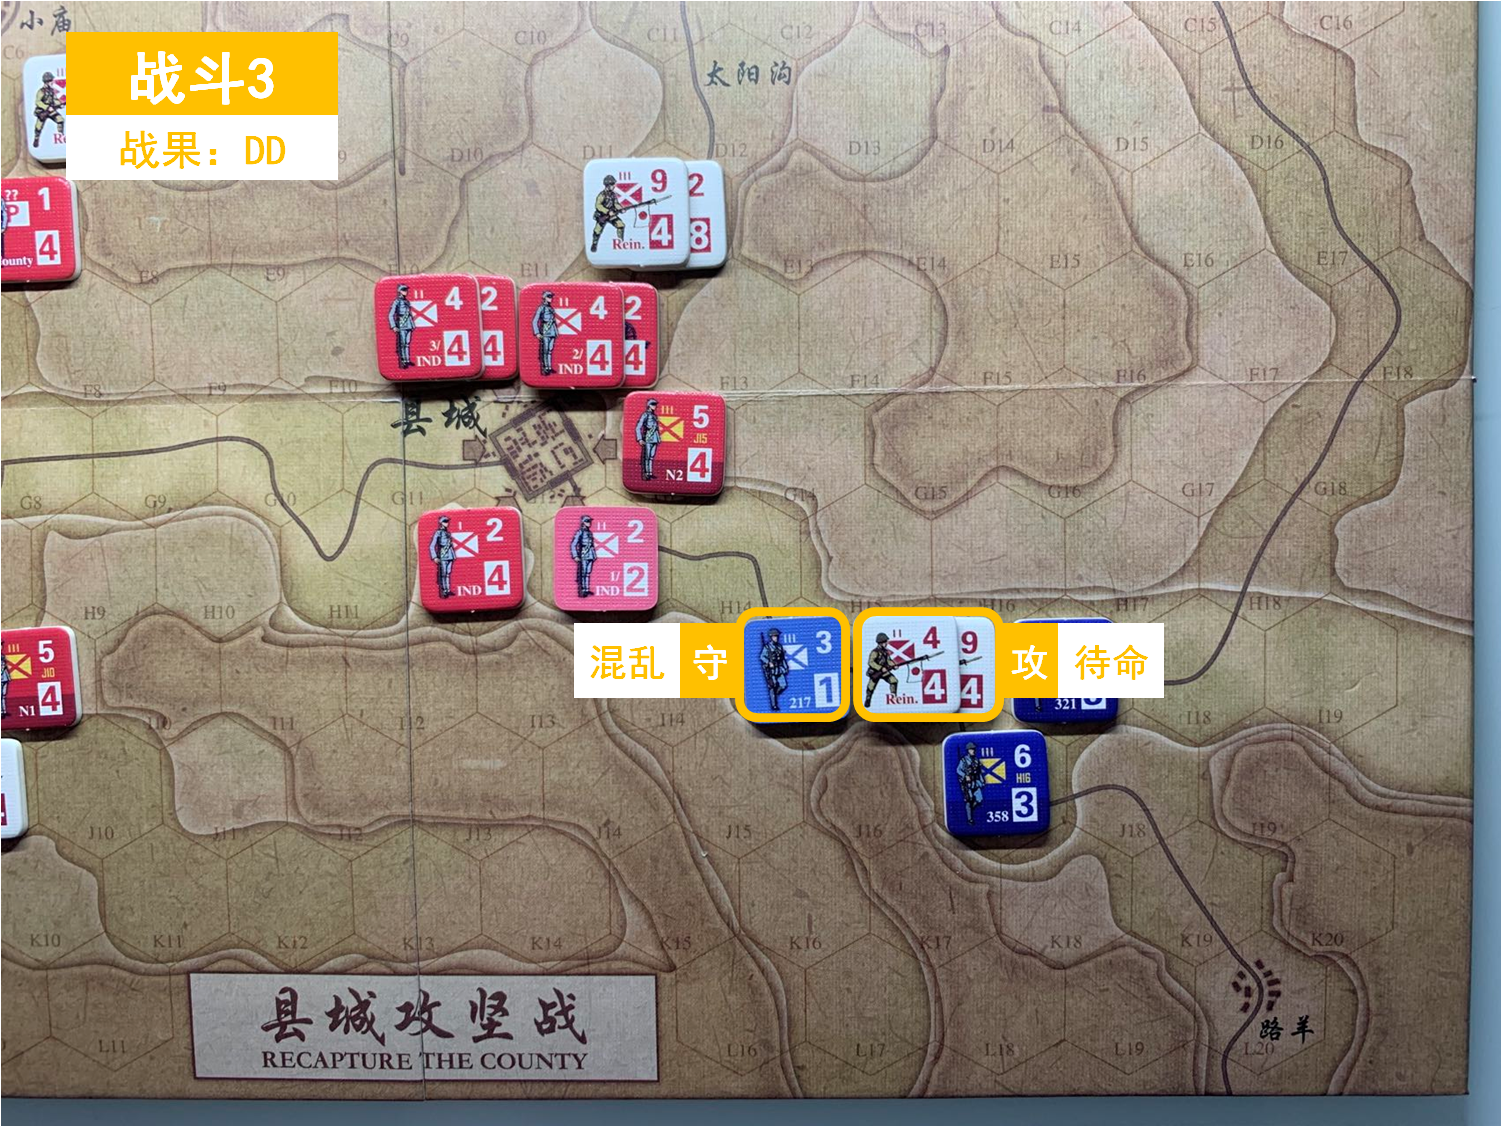 第四回合 日方戰鬥階段 戰鬥3 戰鬥結果